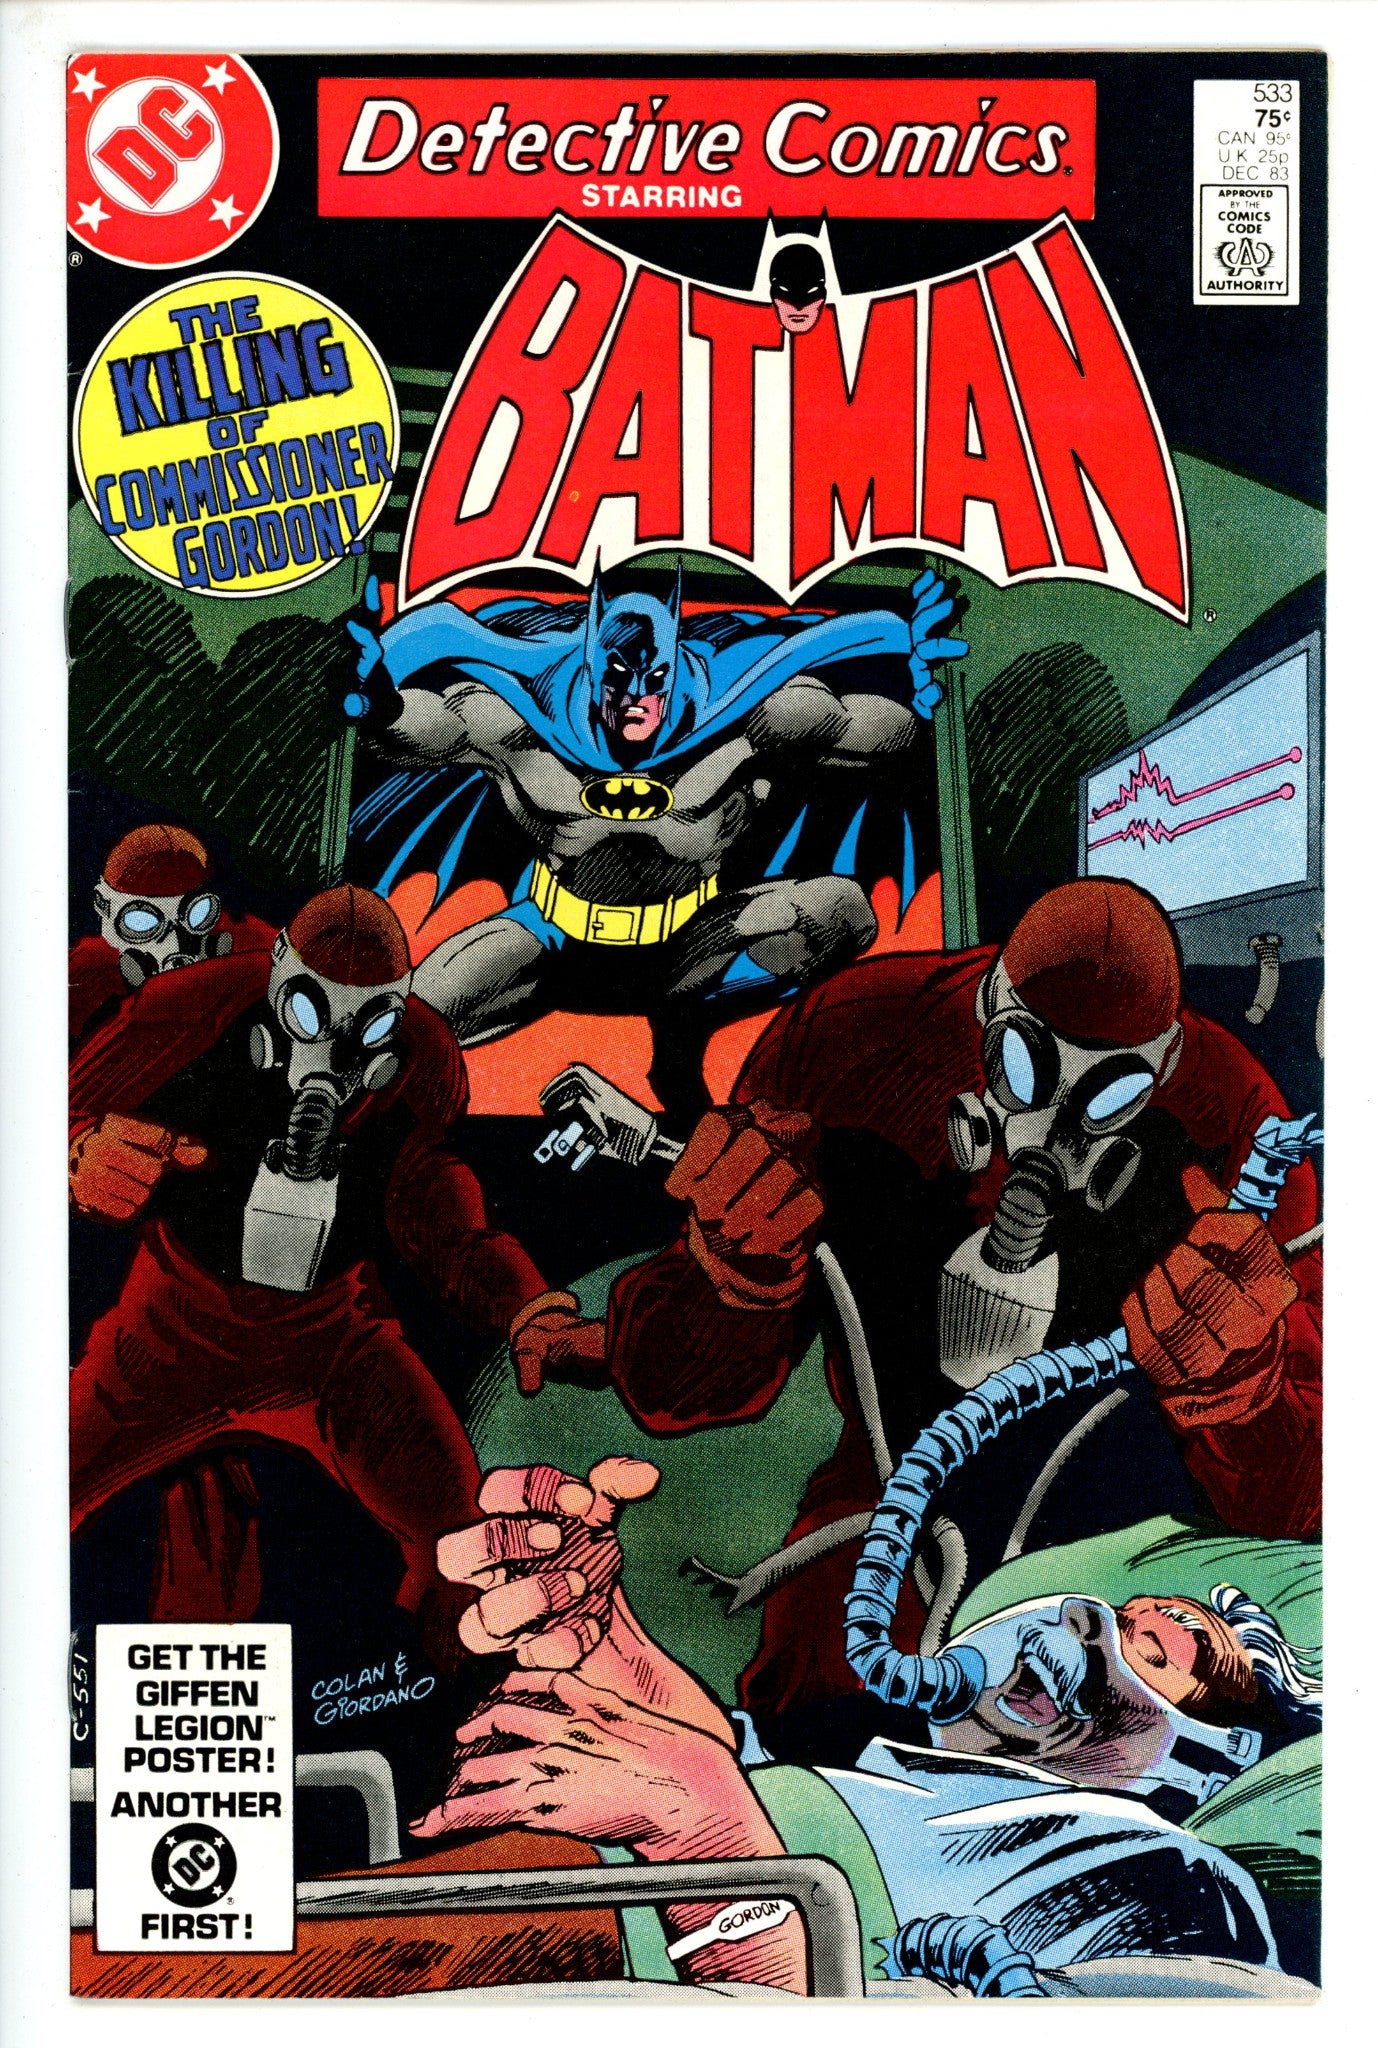 Detective Comics Vol 1 533